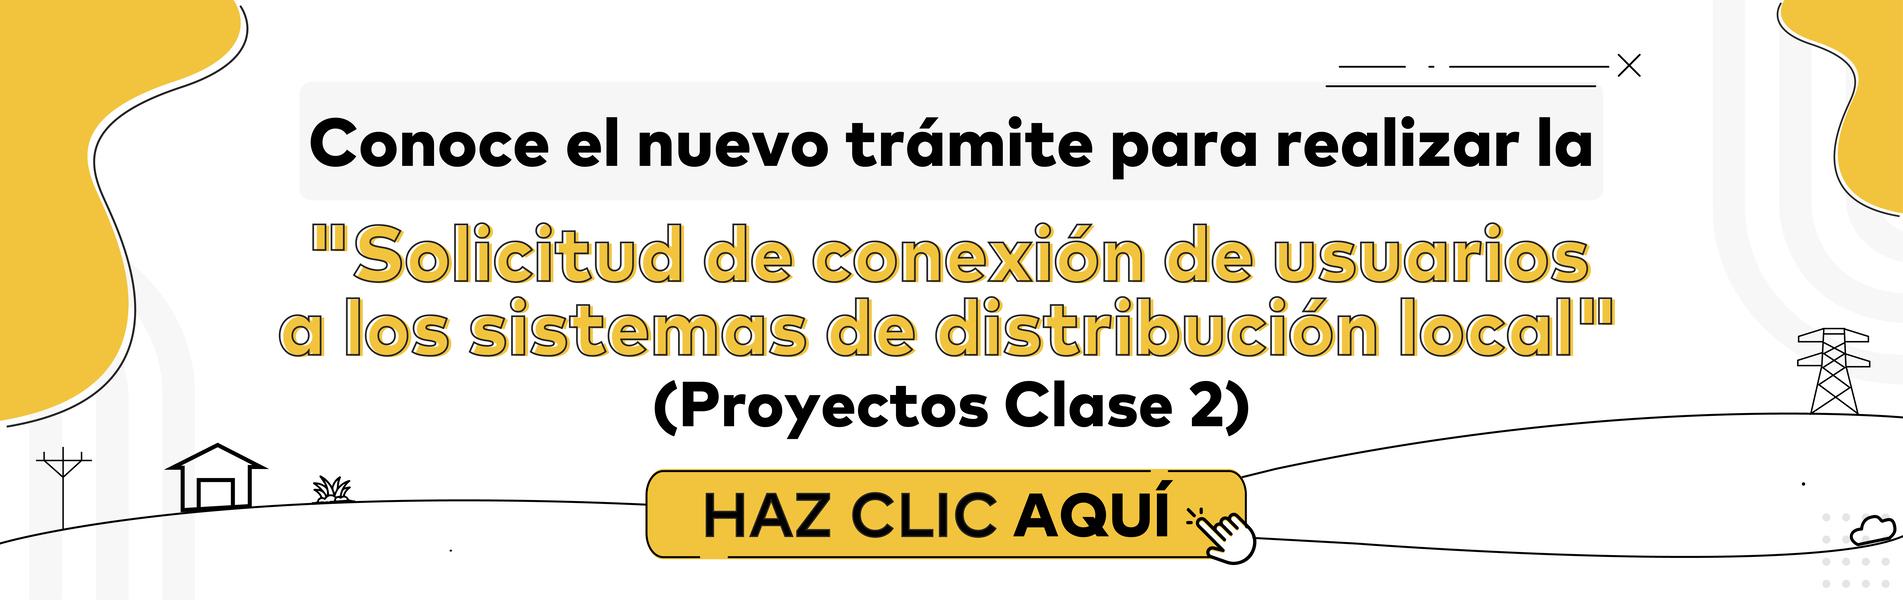 Pryectos Clase 2